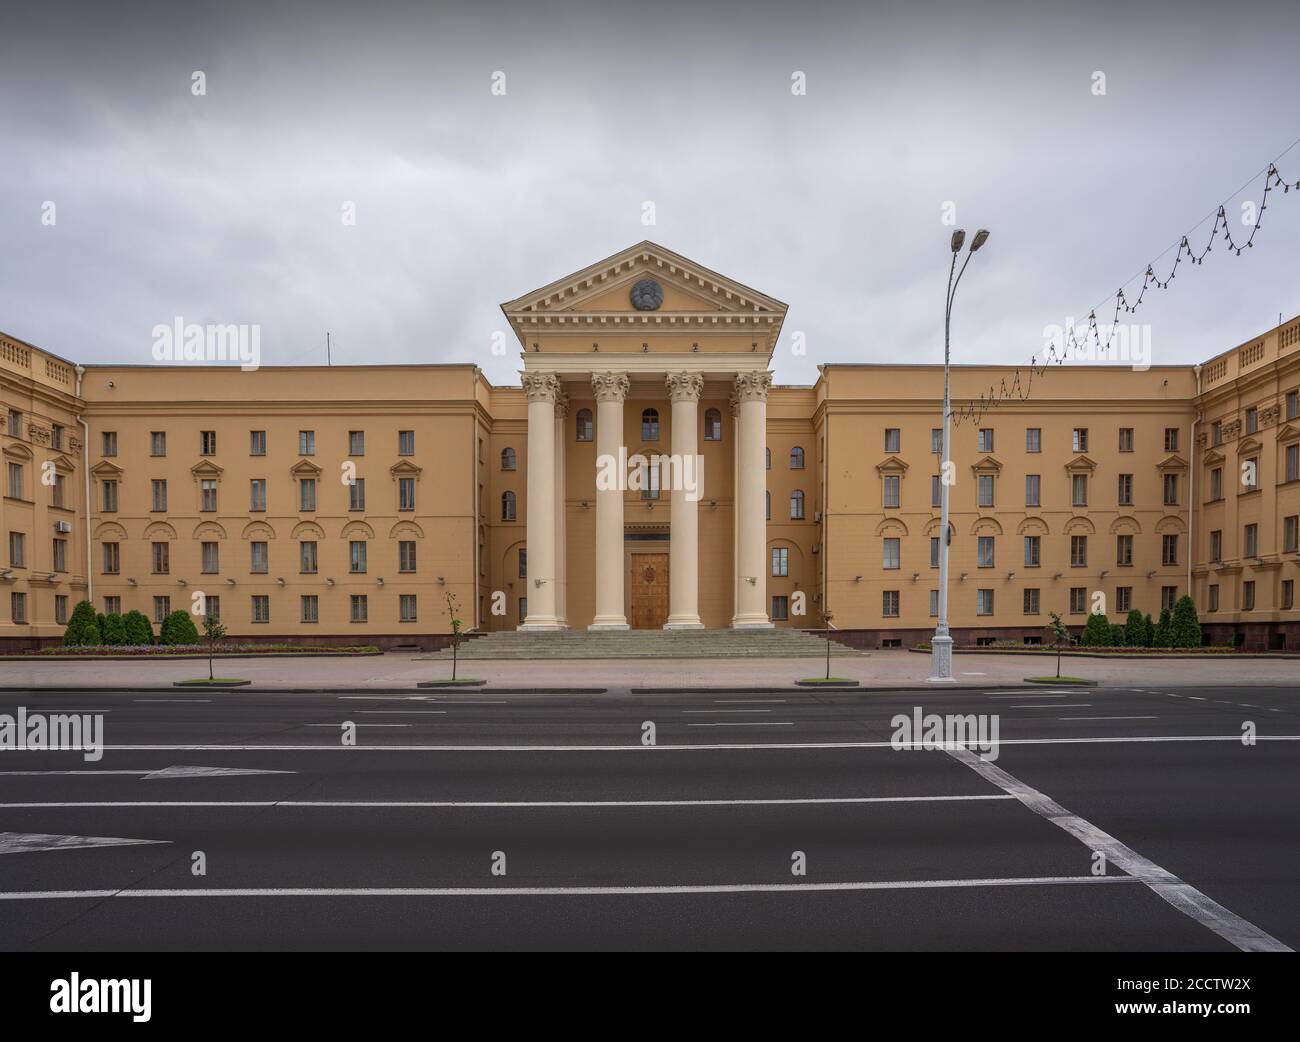 Staatssicherheitskomitee der Republik Belarus - Hauptquartier des KGB - Minsk, Weißrussland Stockfoto